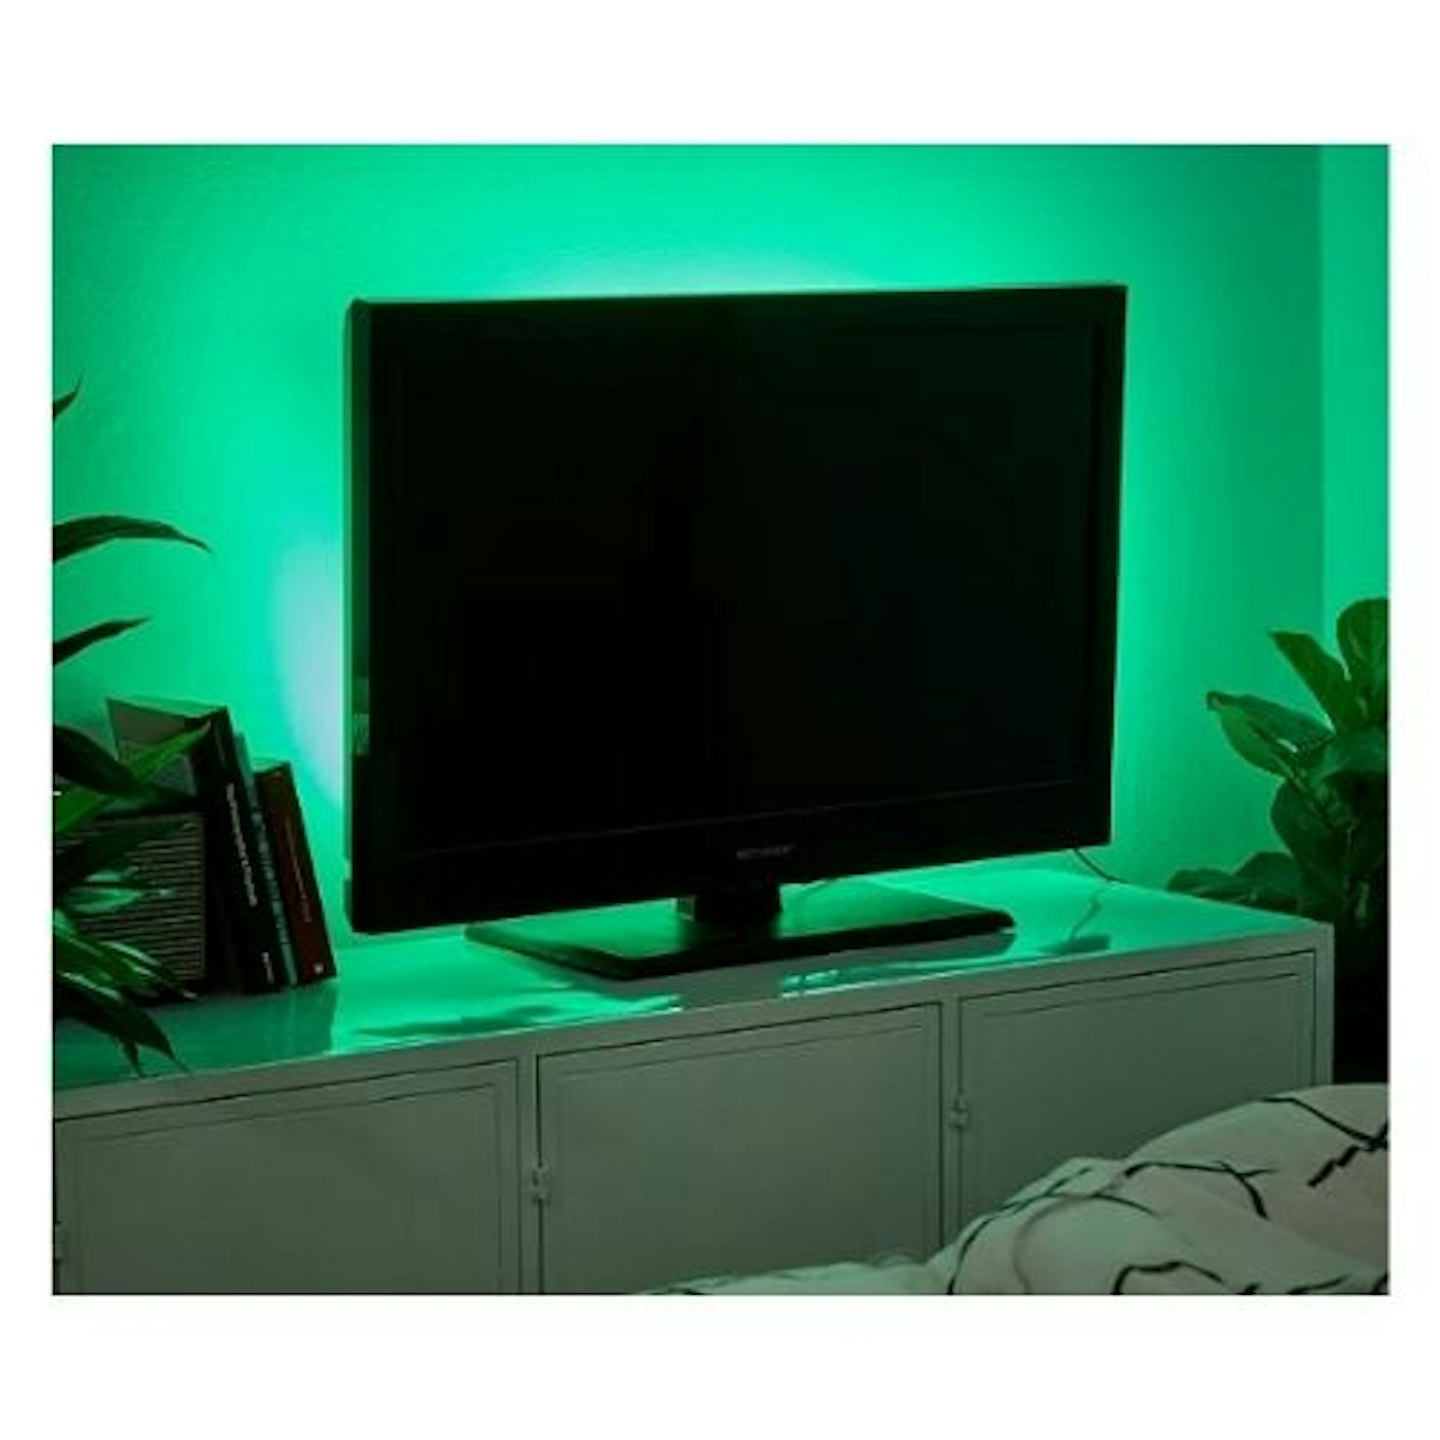 LED Strip Lights behind a TV